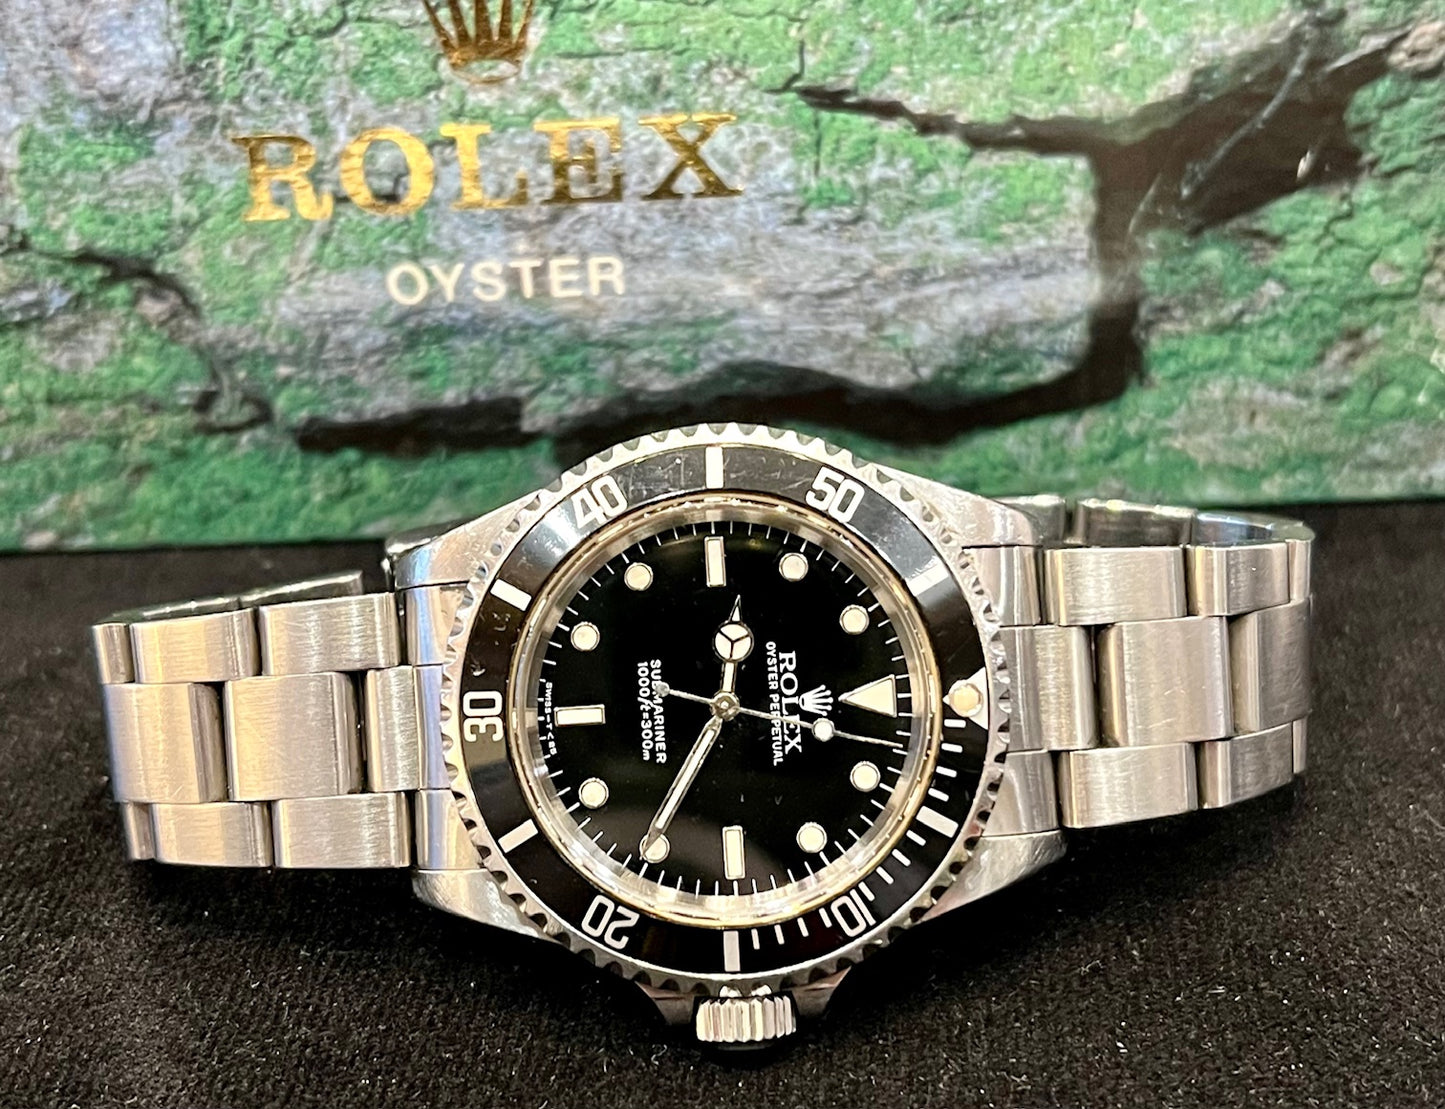 Rolex Submariner No date 14060 1995 only watch